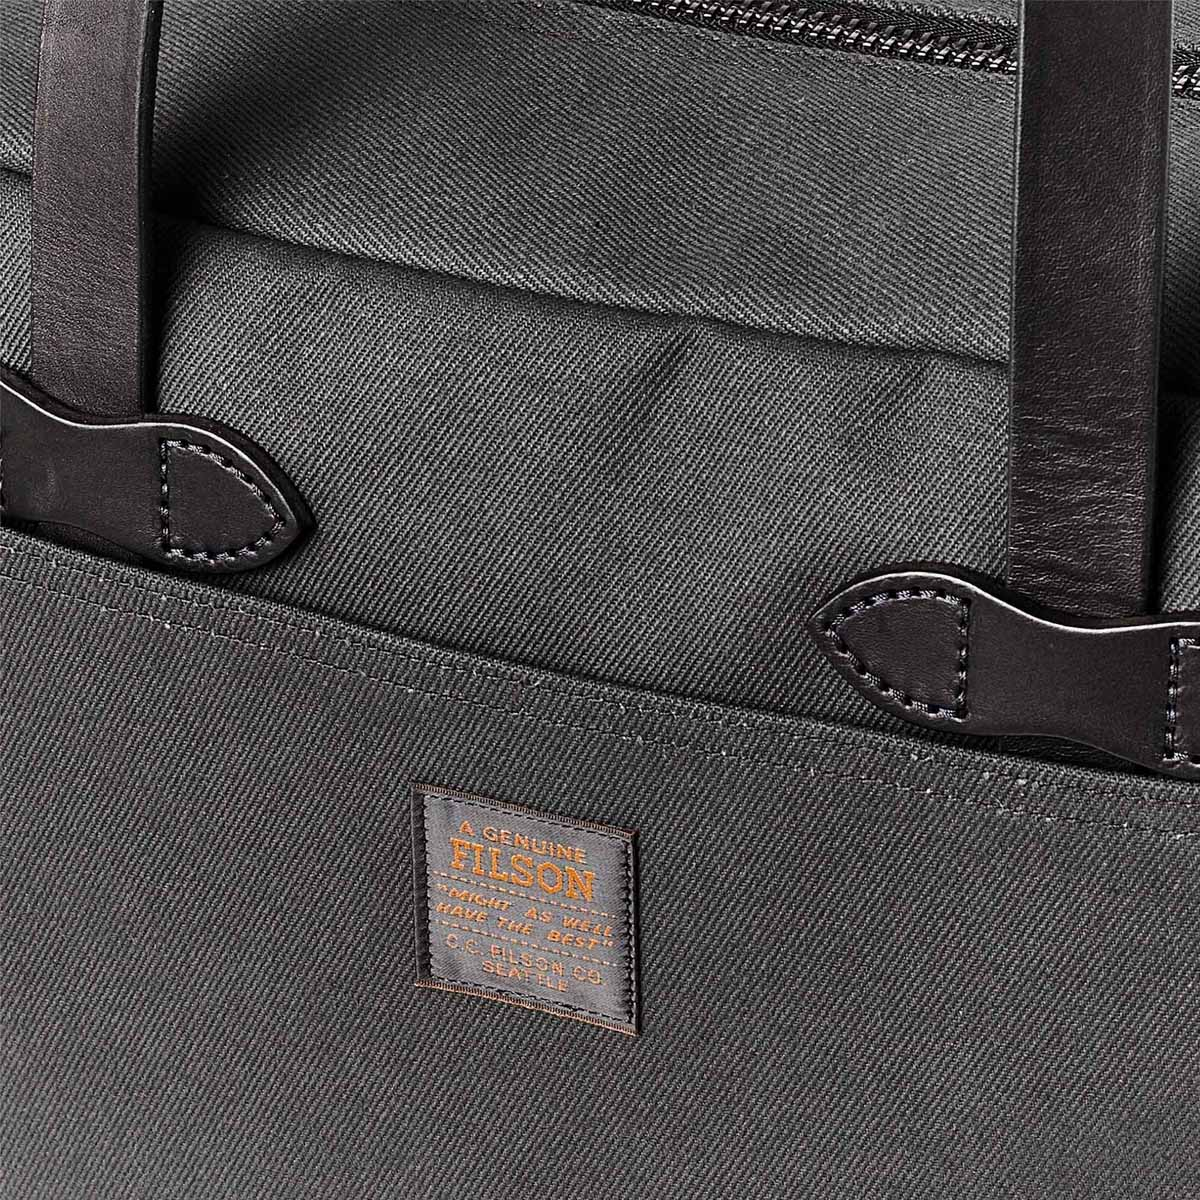 Filson Rugged Twill Tote Bag With Zipper Faded Black, gemaakt voor mannen en vrouwen die van gemak, stijl en kwaliteit houden